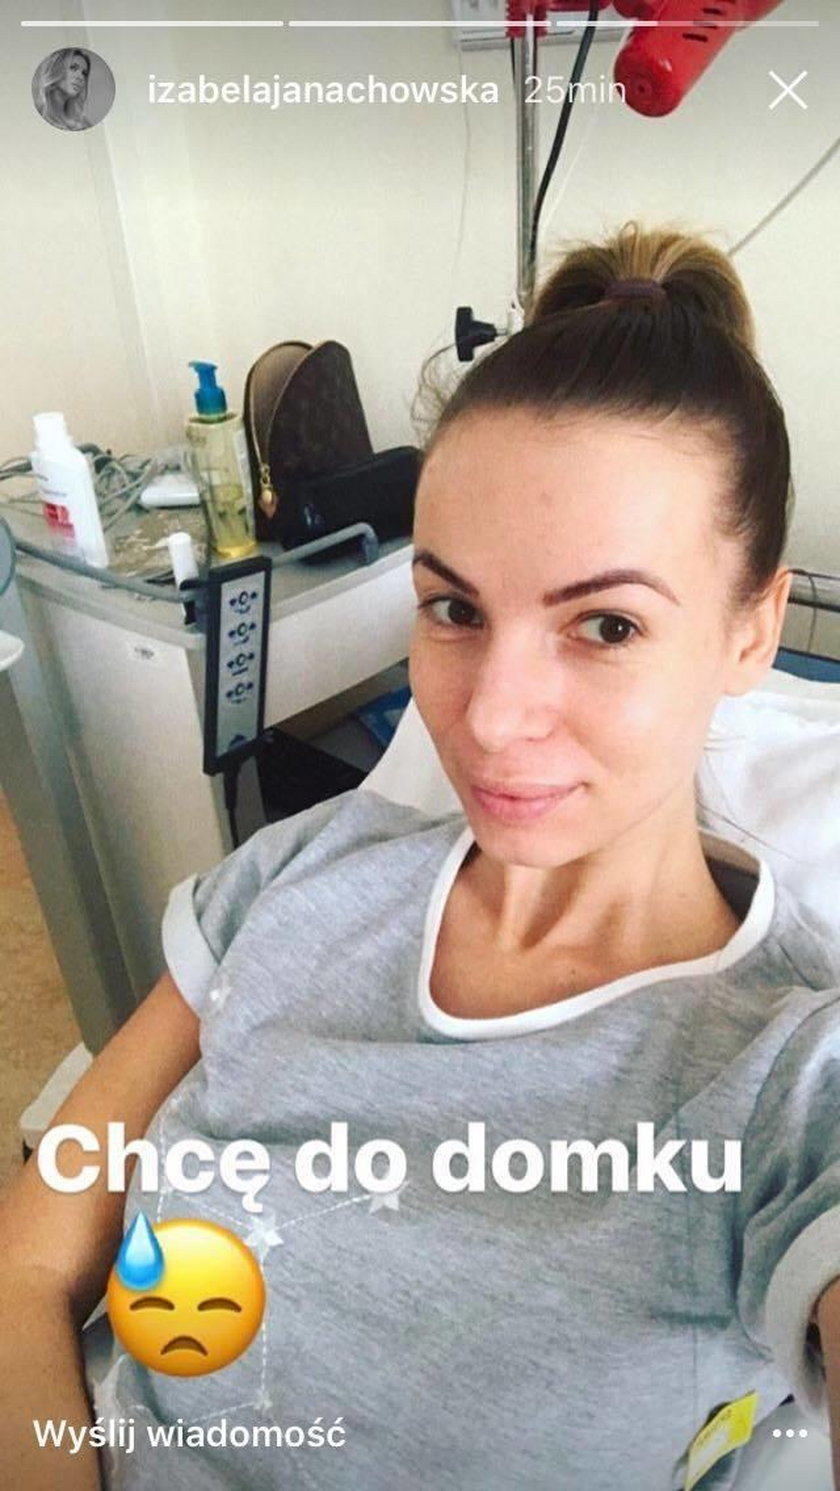 Zdjęcie Izabeli Janachowskiej po operacji